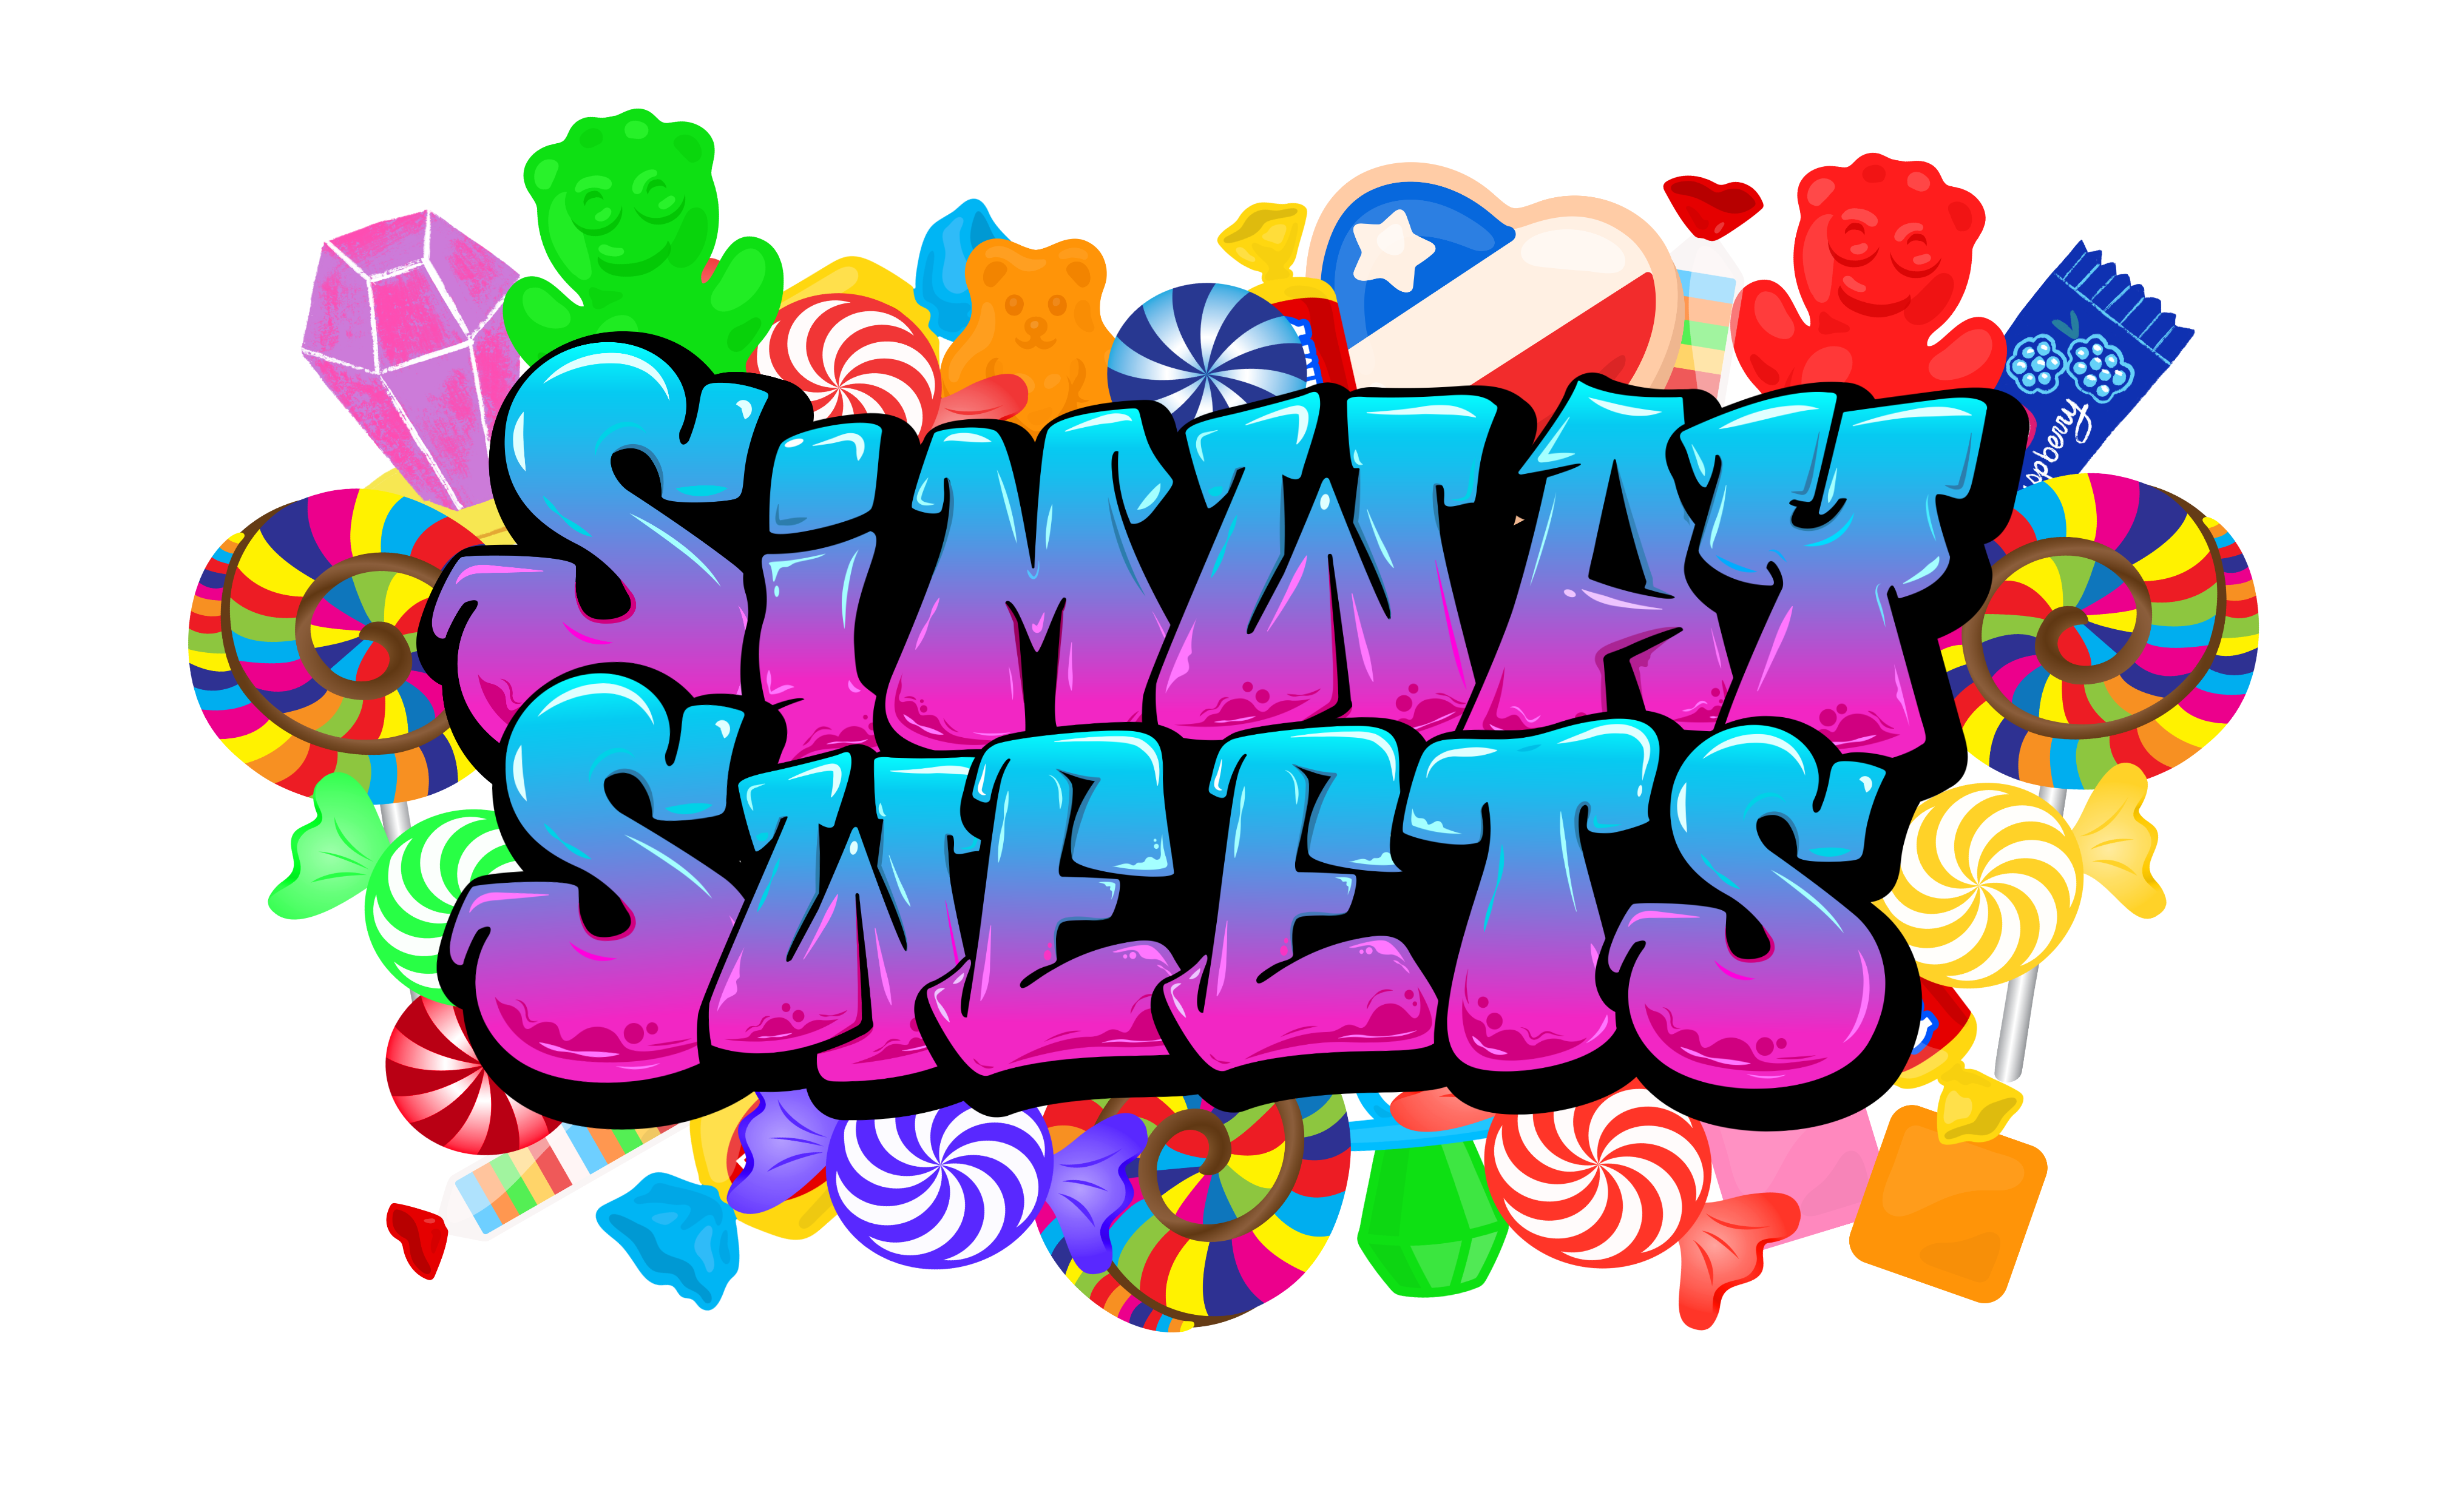 Simway Sweets